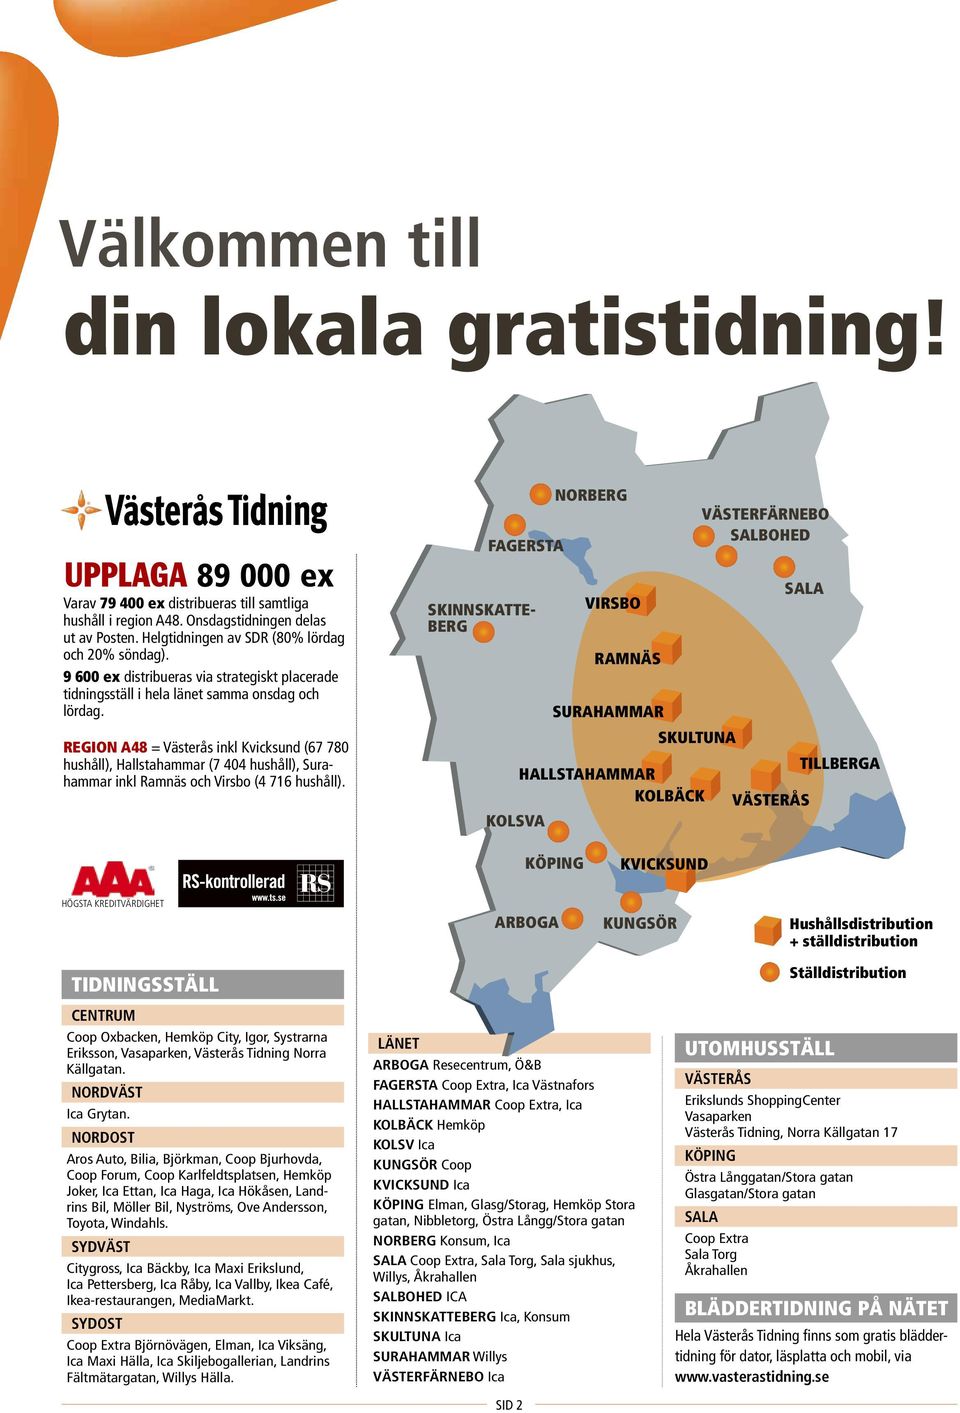 Region A48 = Västerås inkl Kvicksund (67 780 hushåll), Hallstahammar (7 404 hushåll), Surahammar inkl Ramnäs och Virsbo (4 716 hushåll).